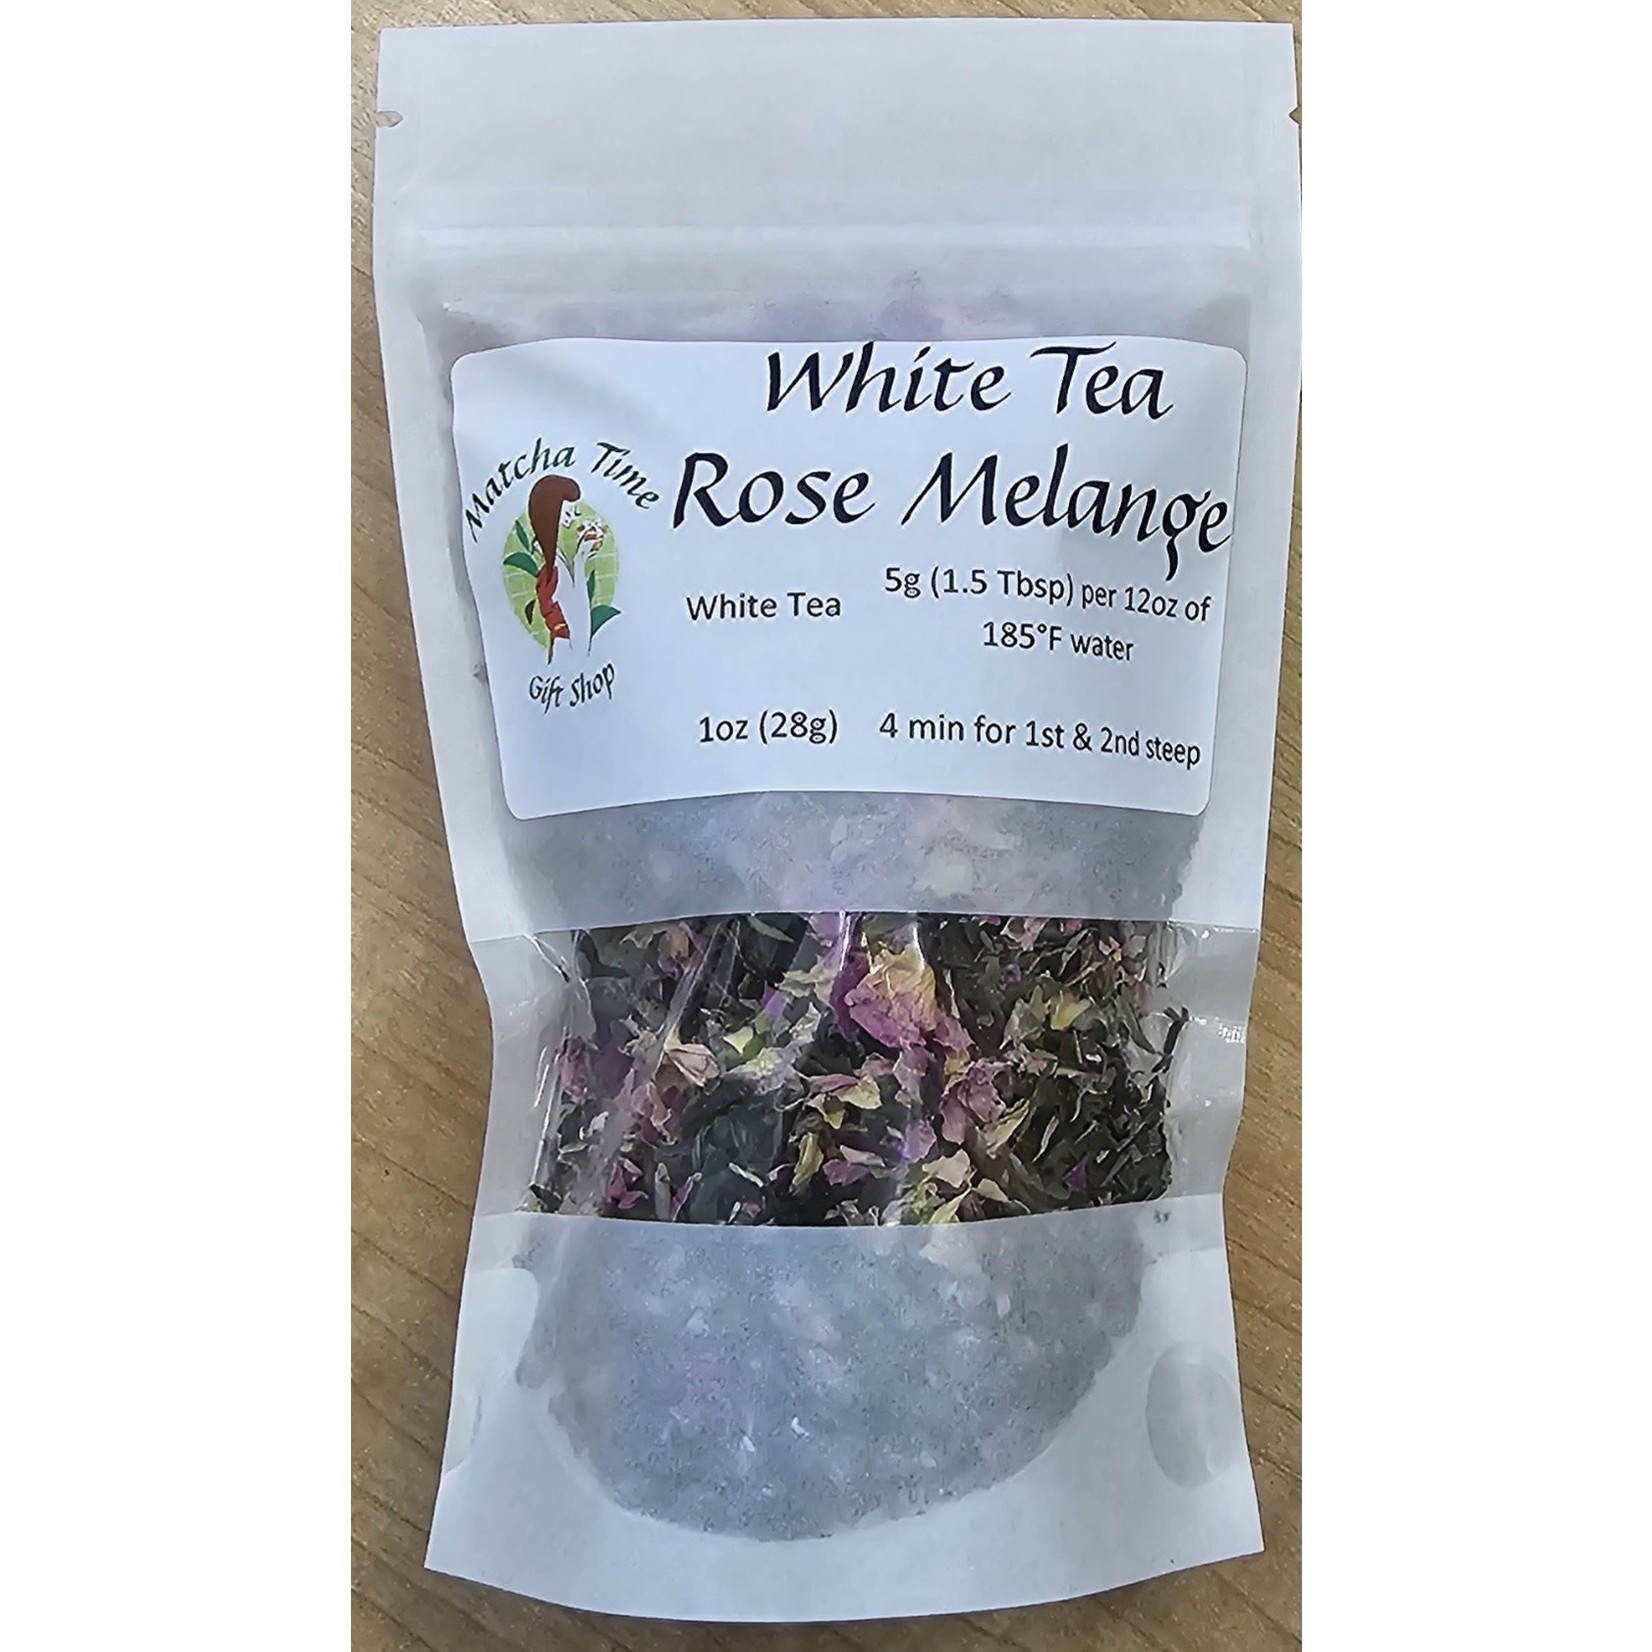 Matcha Time Cafe White Tea Rose Melange - Loose Leaf 1 oz bag